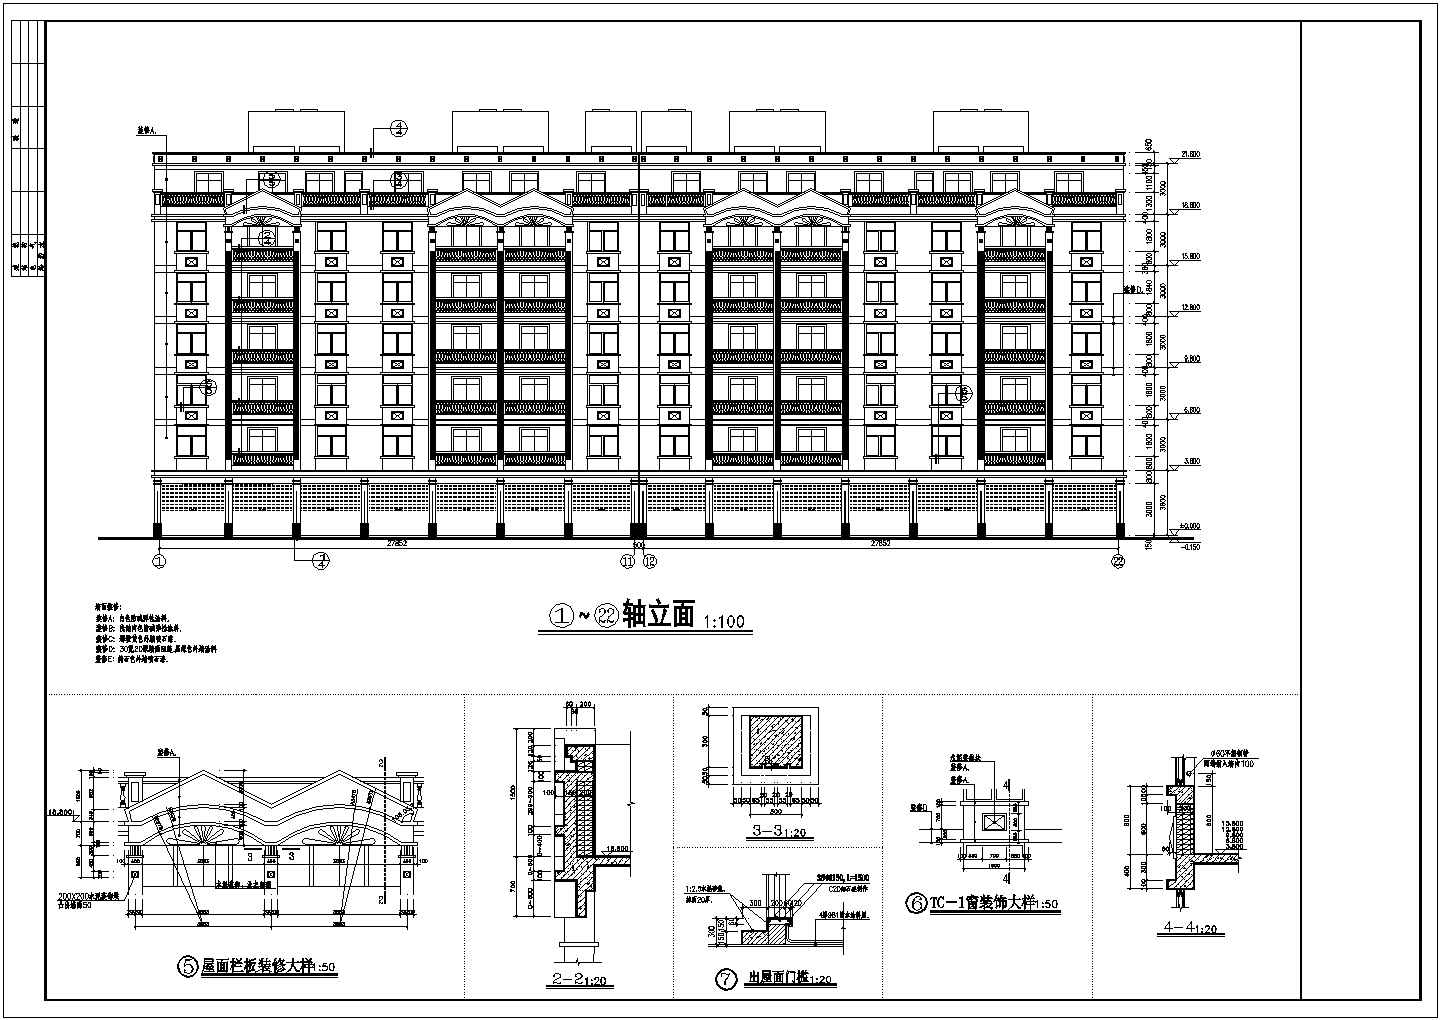 南通市某建筑公司装修设计某多层住宅建筑全套CAD施工图纸